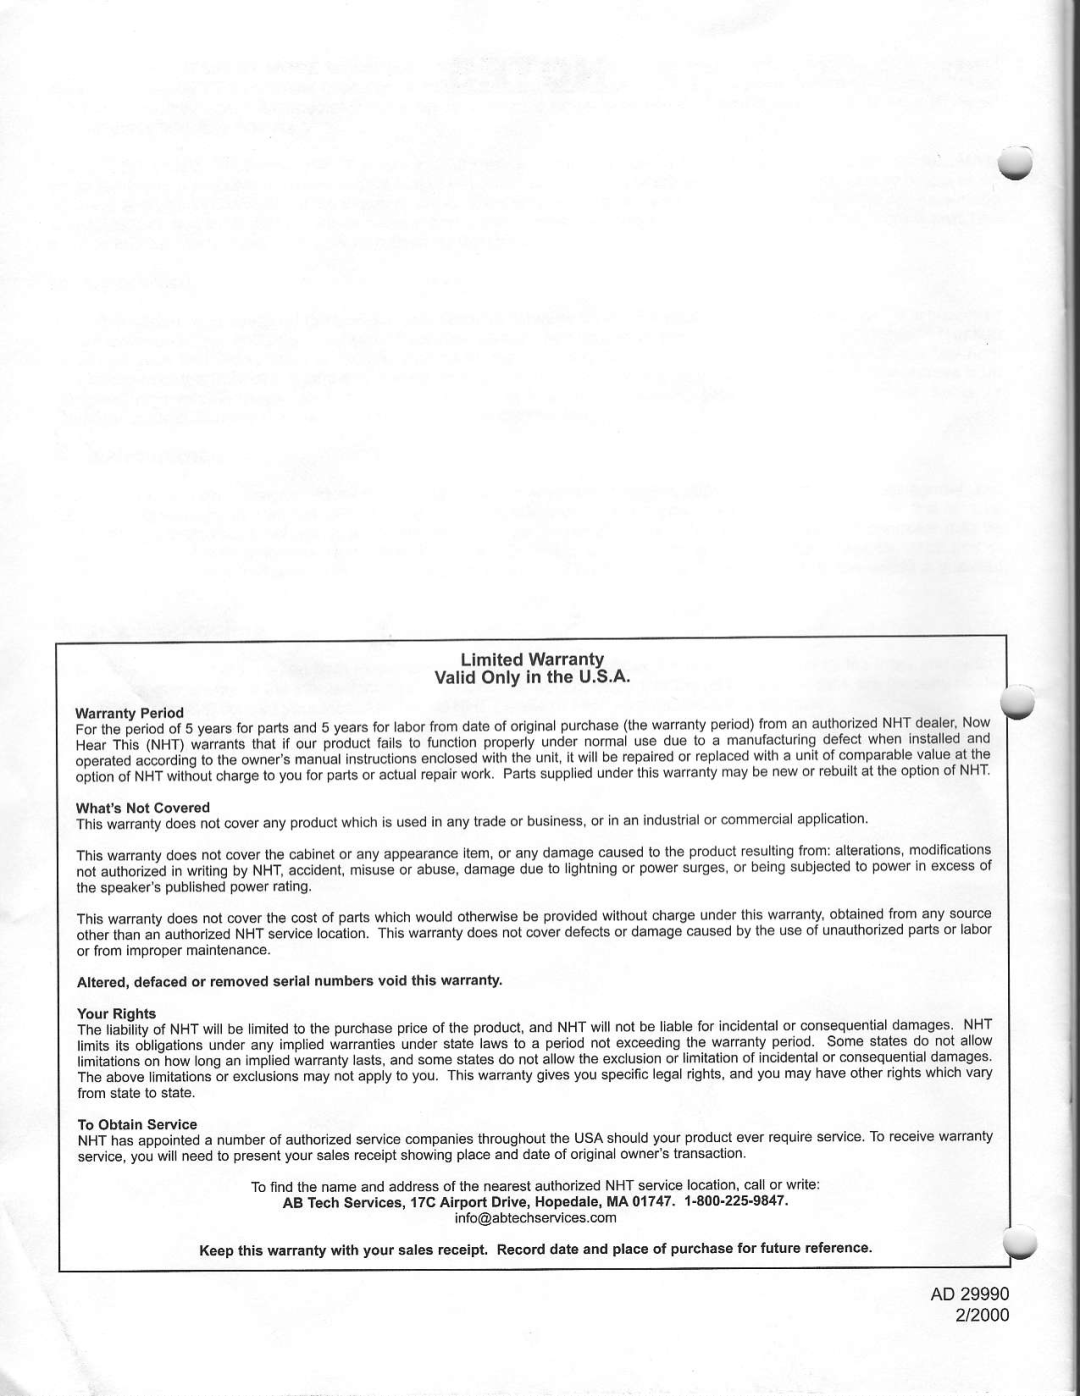 NHT VT-3 warranty LimitedWarranty ValidOnlyin the U.S.A, AD 29990 2/2000 